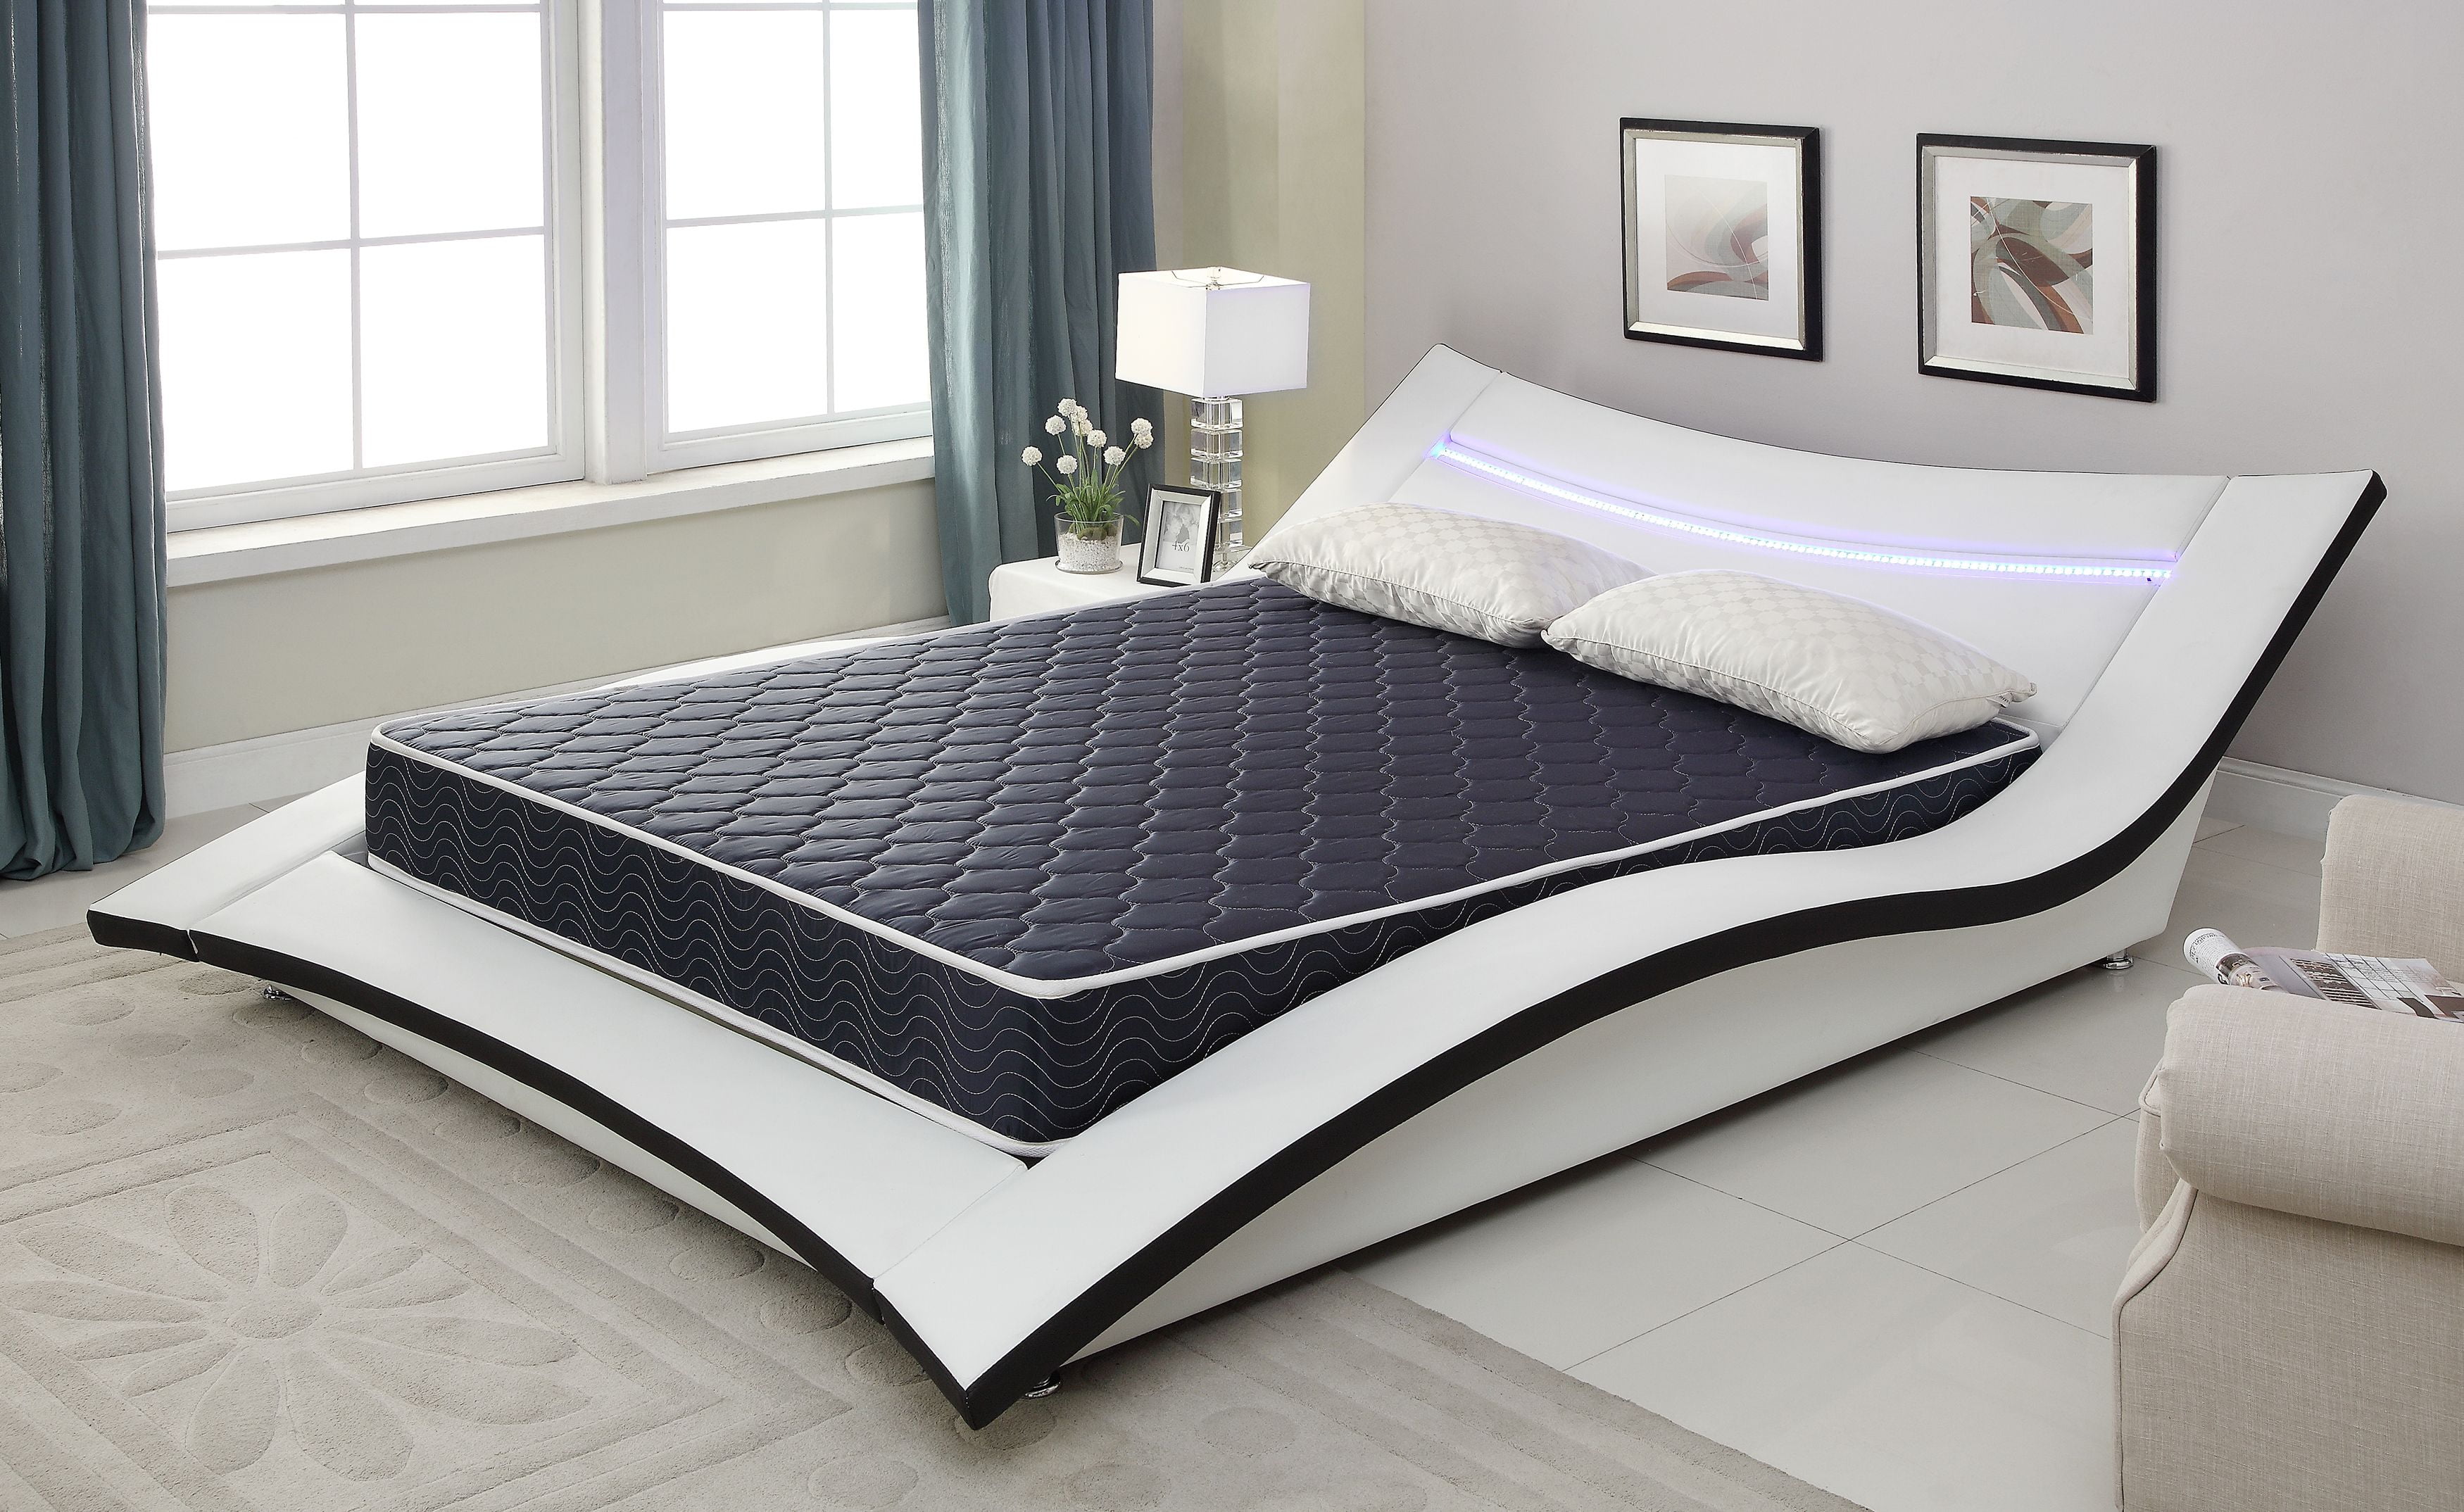 65 x 22 x 6 foam mattress